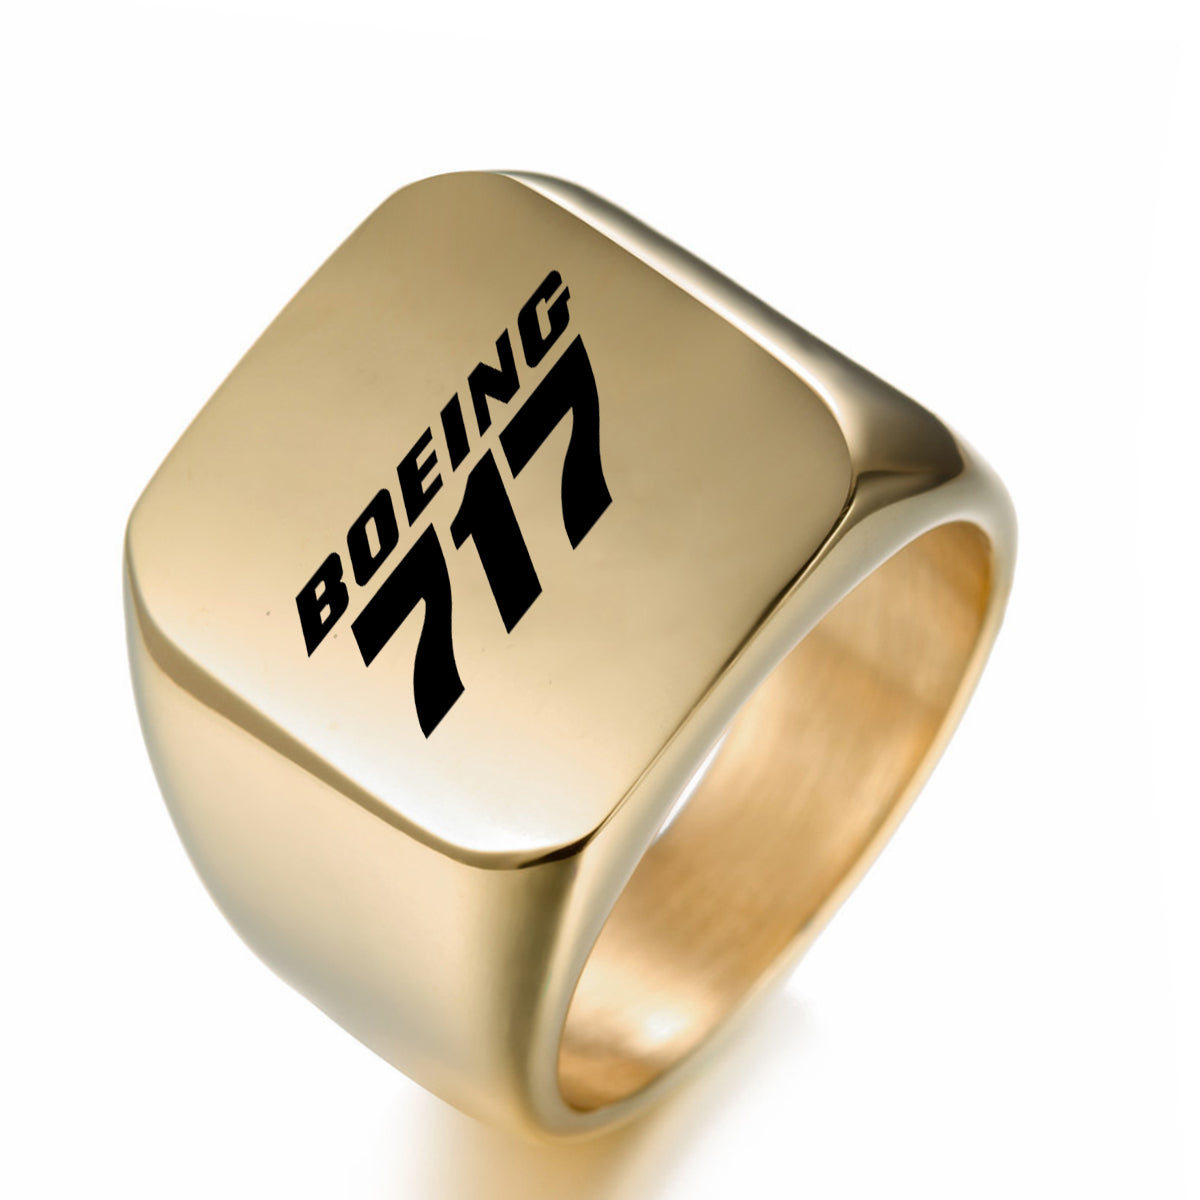 Boeing 717 & Text Designed Men Rings